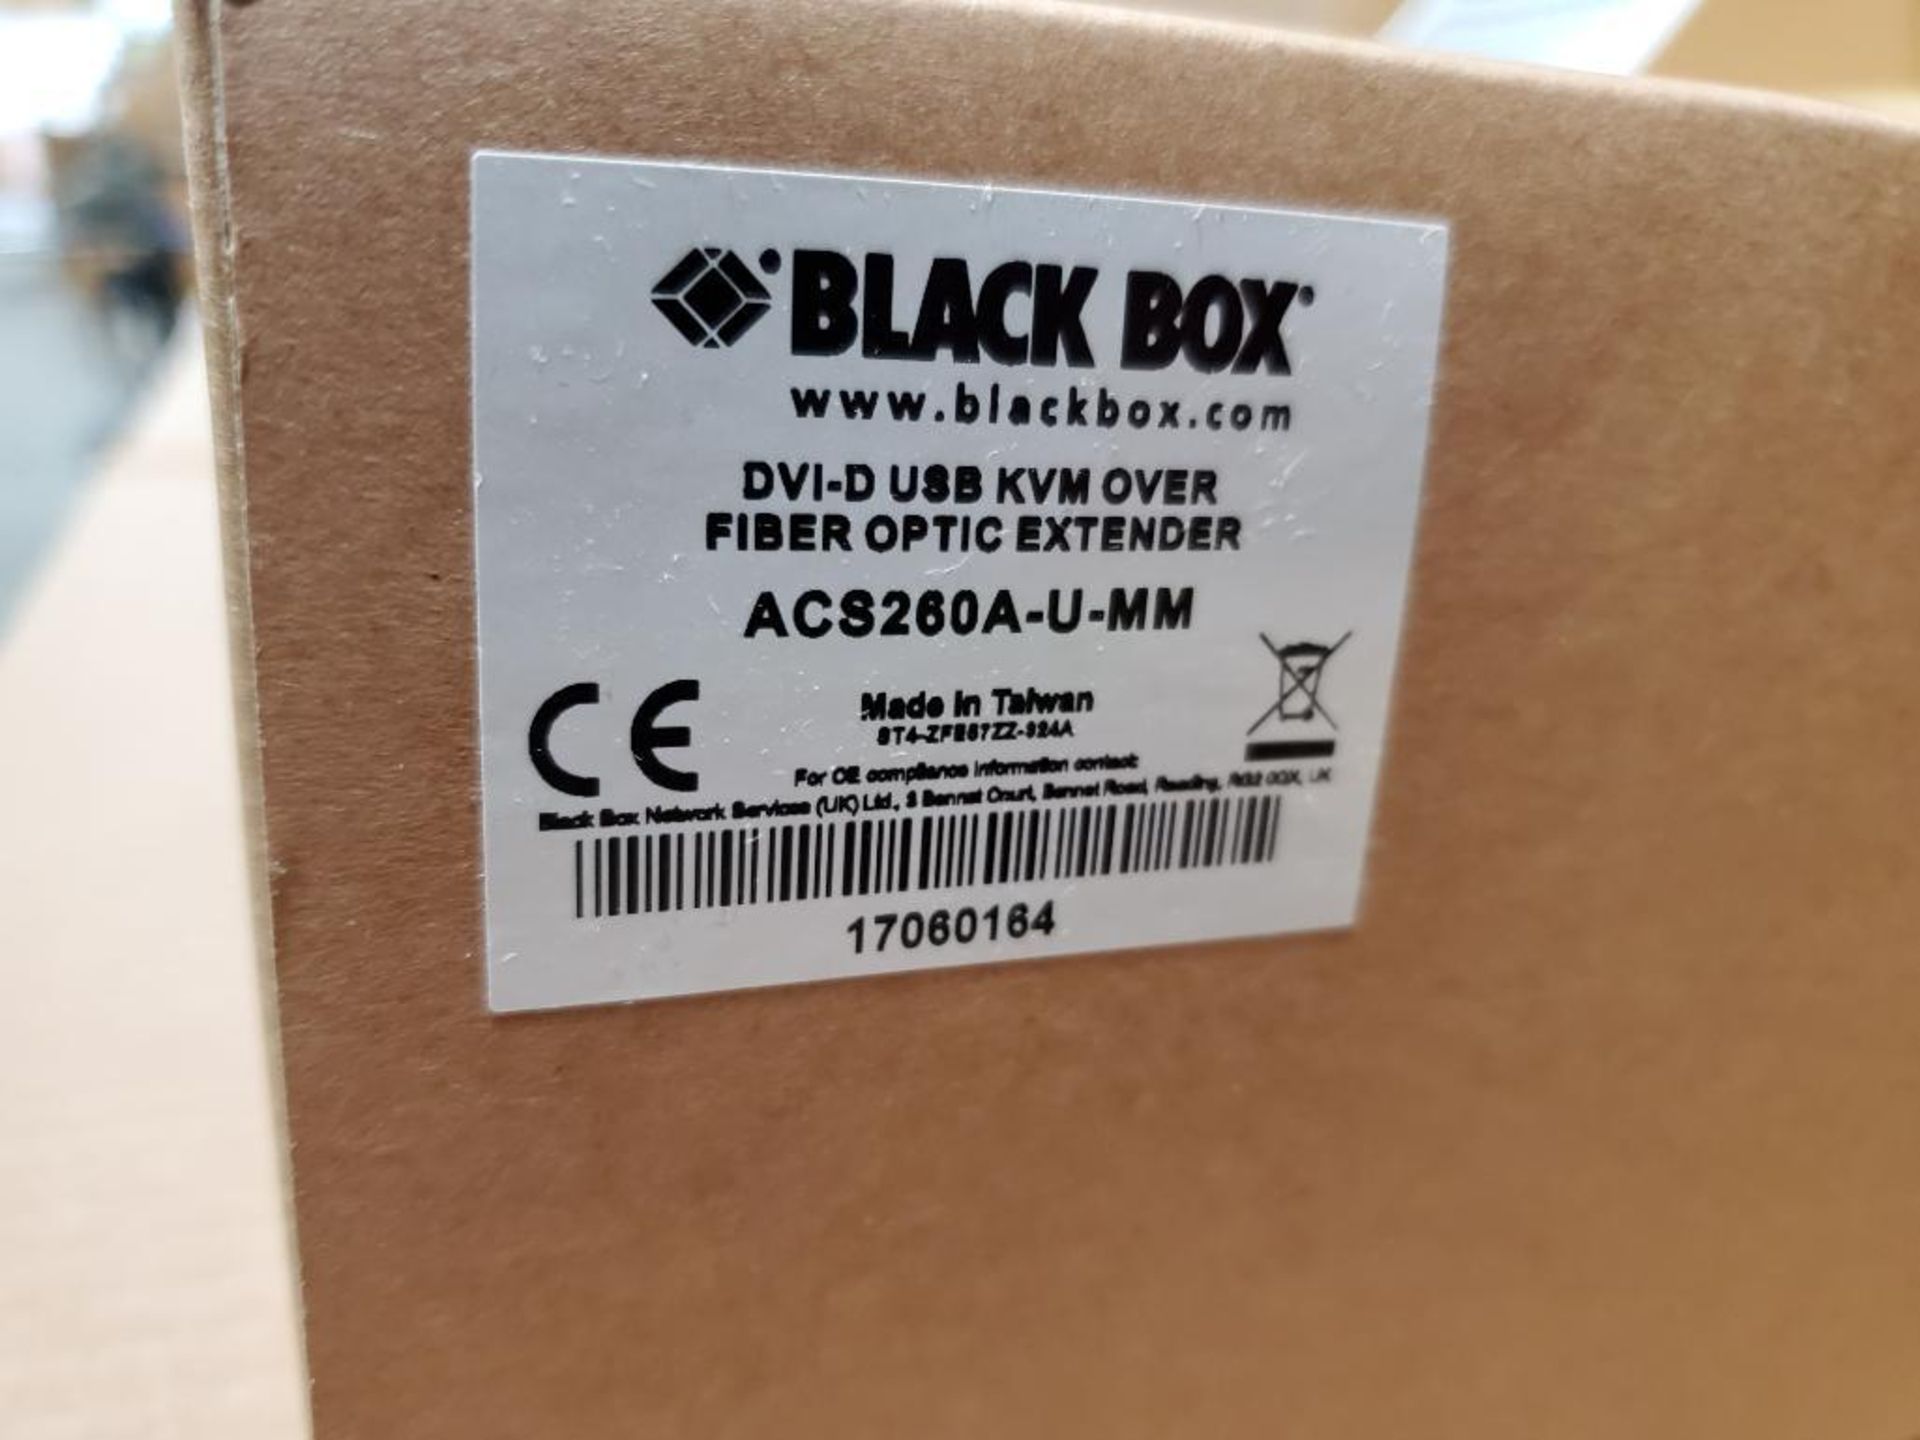 Black Black fiber optic extender kit. DVI-D USB KVM OVER. Part number AC8260A-U-MM. - Image 5 of 5